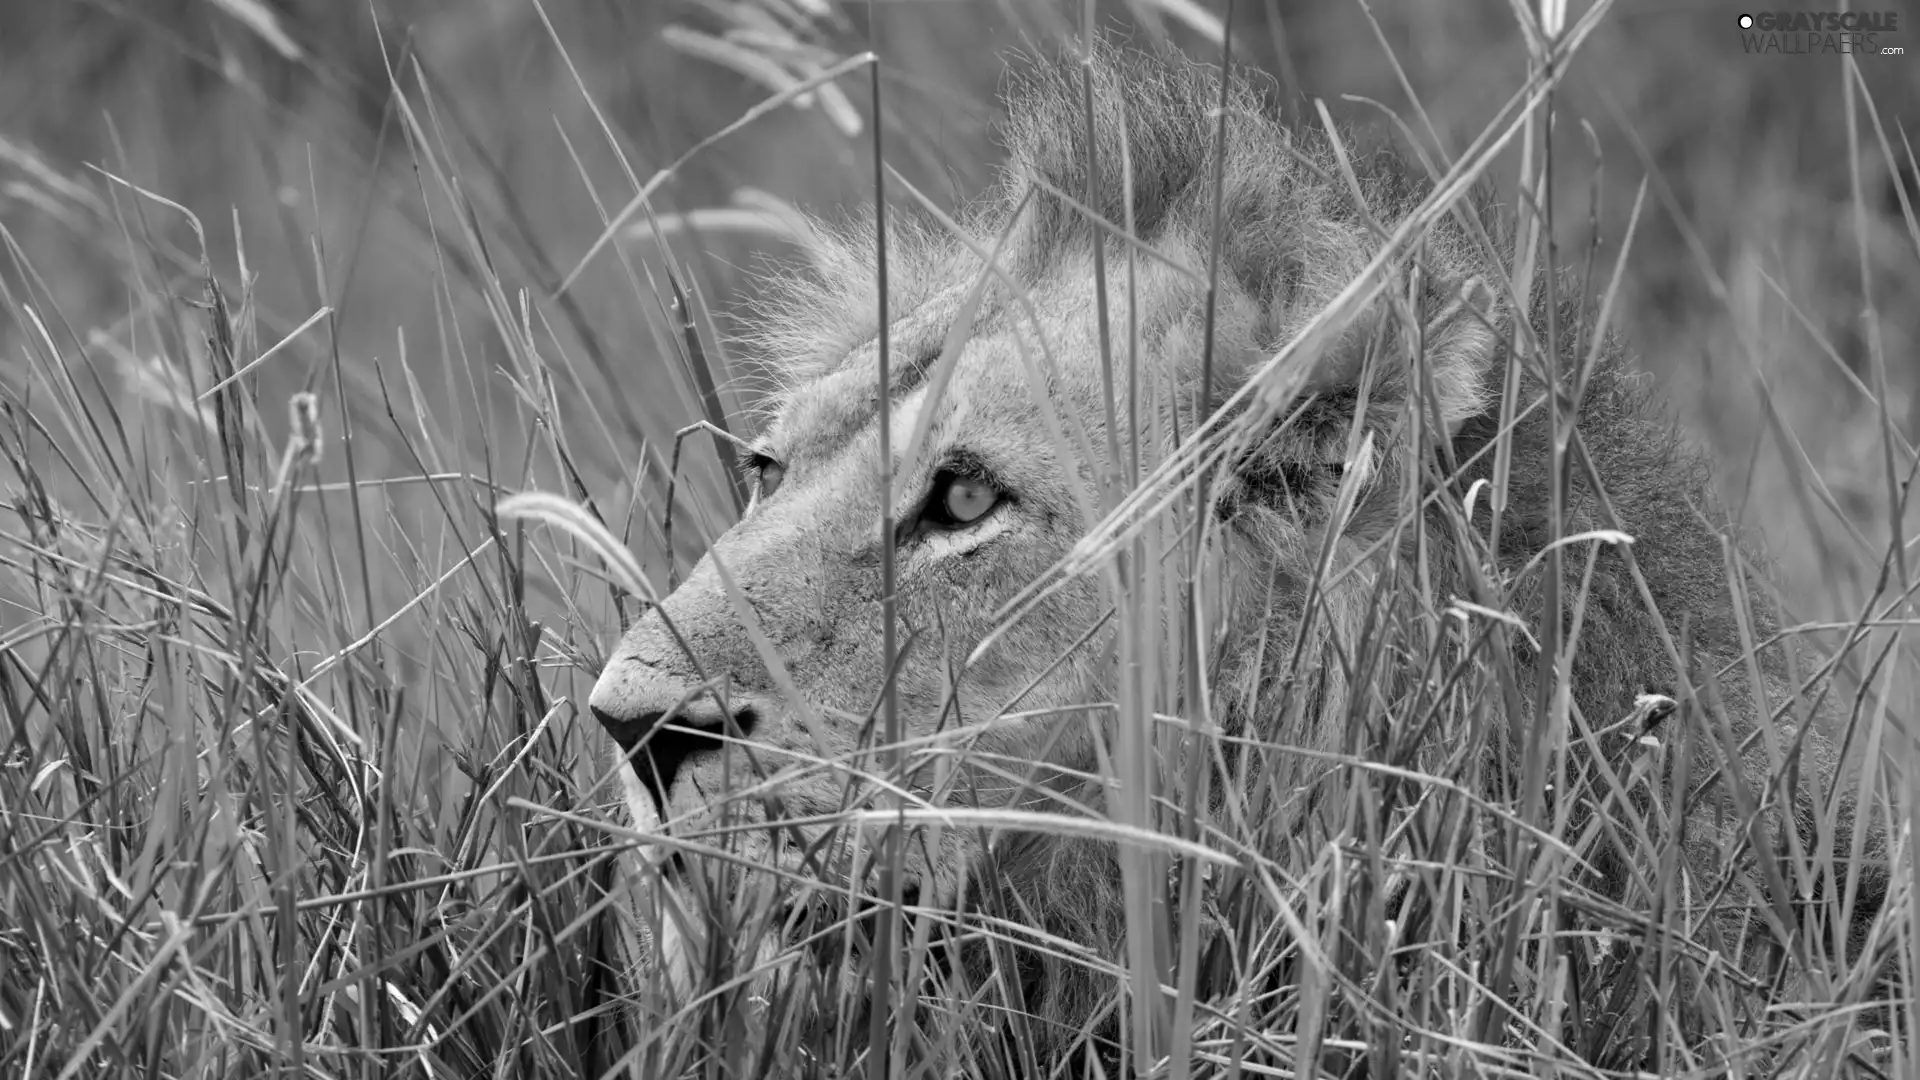 Lion, grass